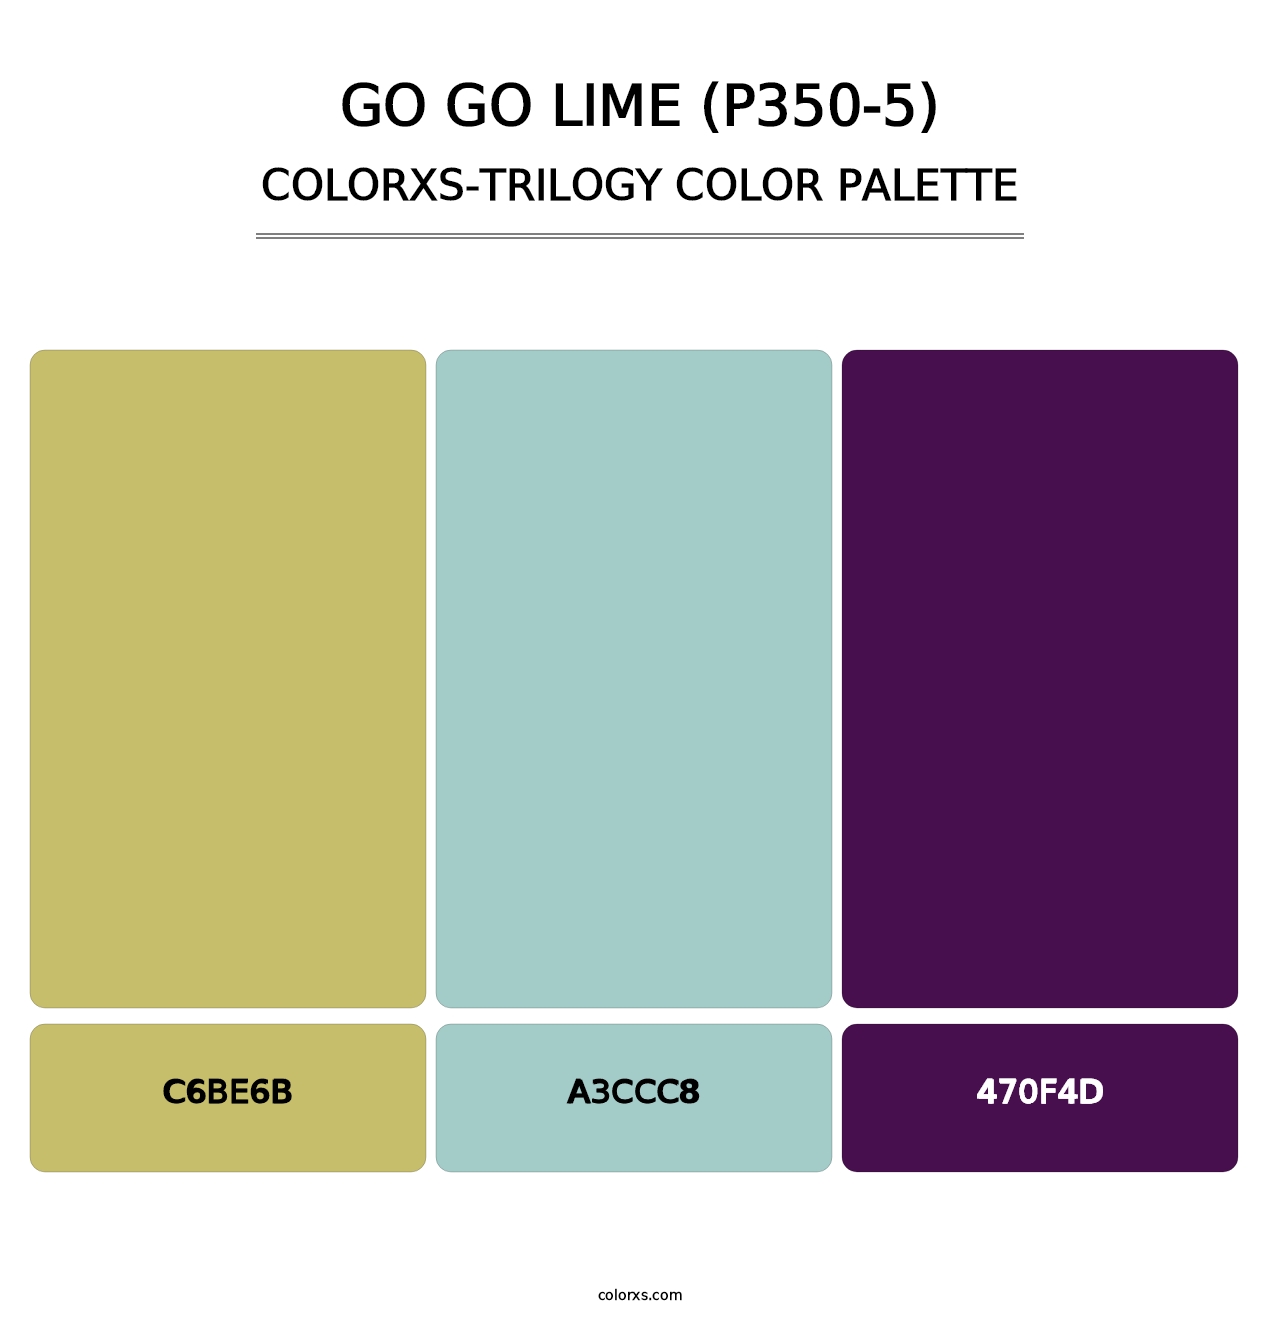 Go Go Lime (P350-5) - Colorxs Trilogy Palette